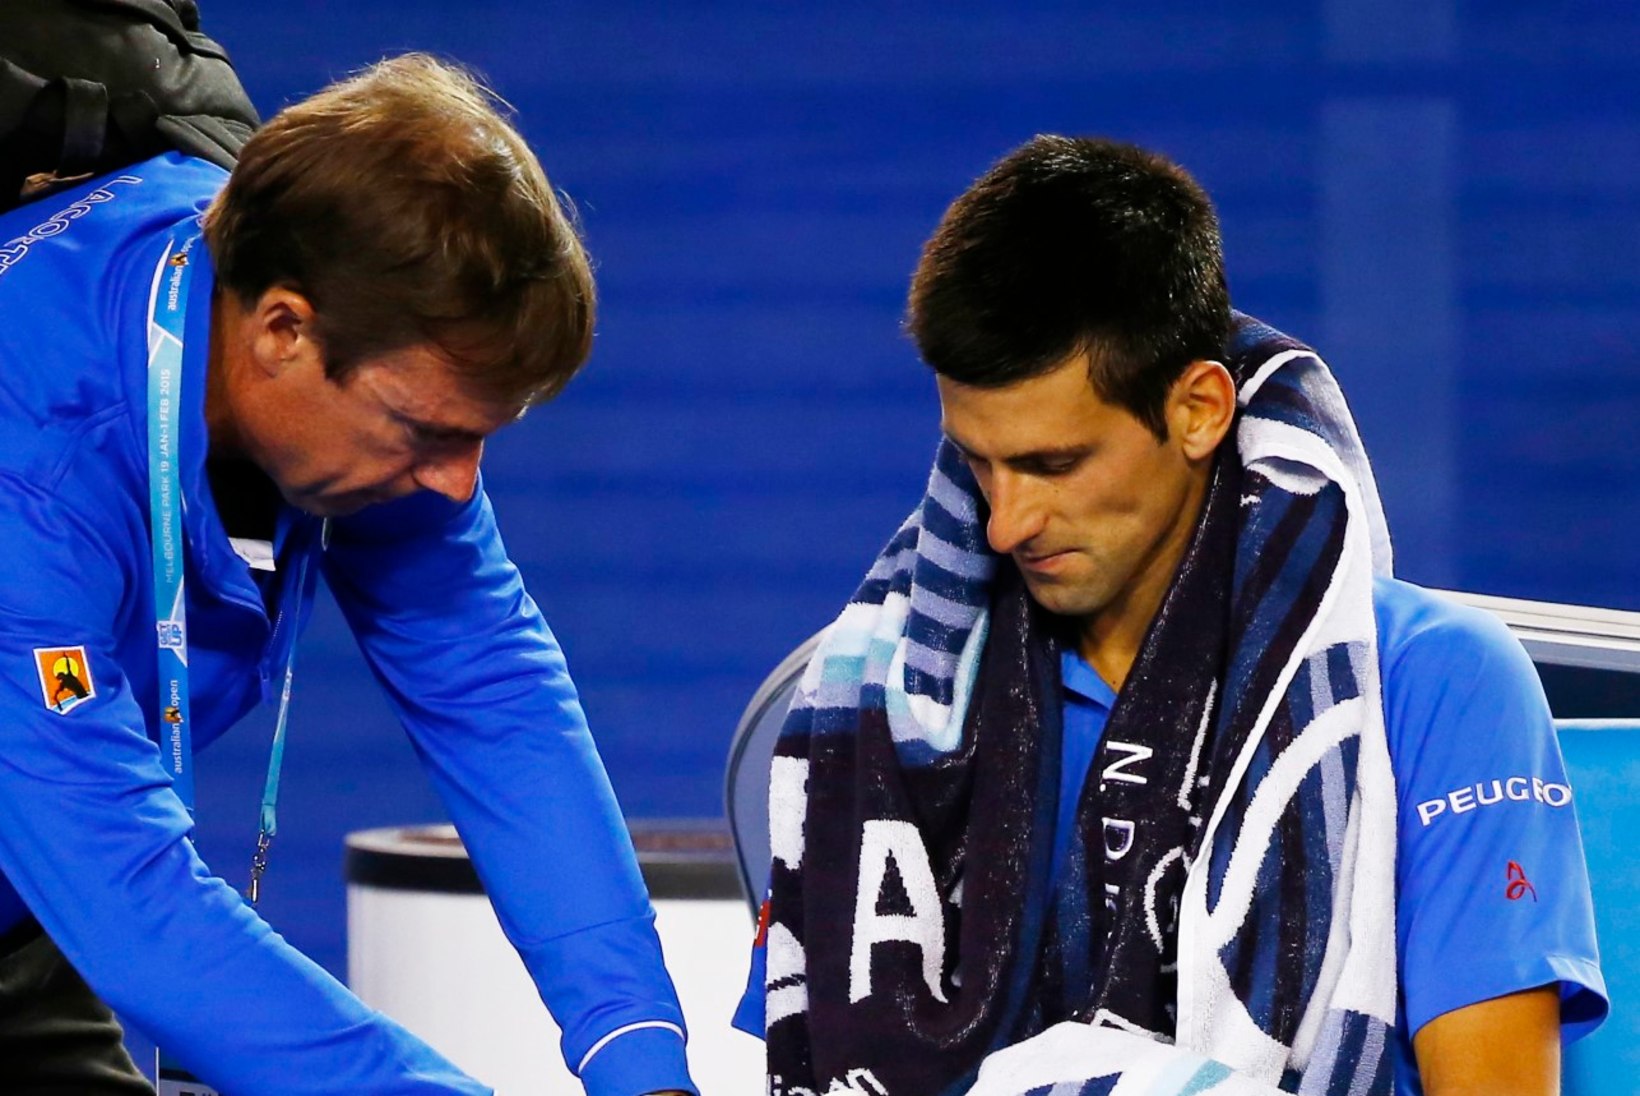 Teeseldud vigastused – kas ainult Novak Djokovici probleem?